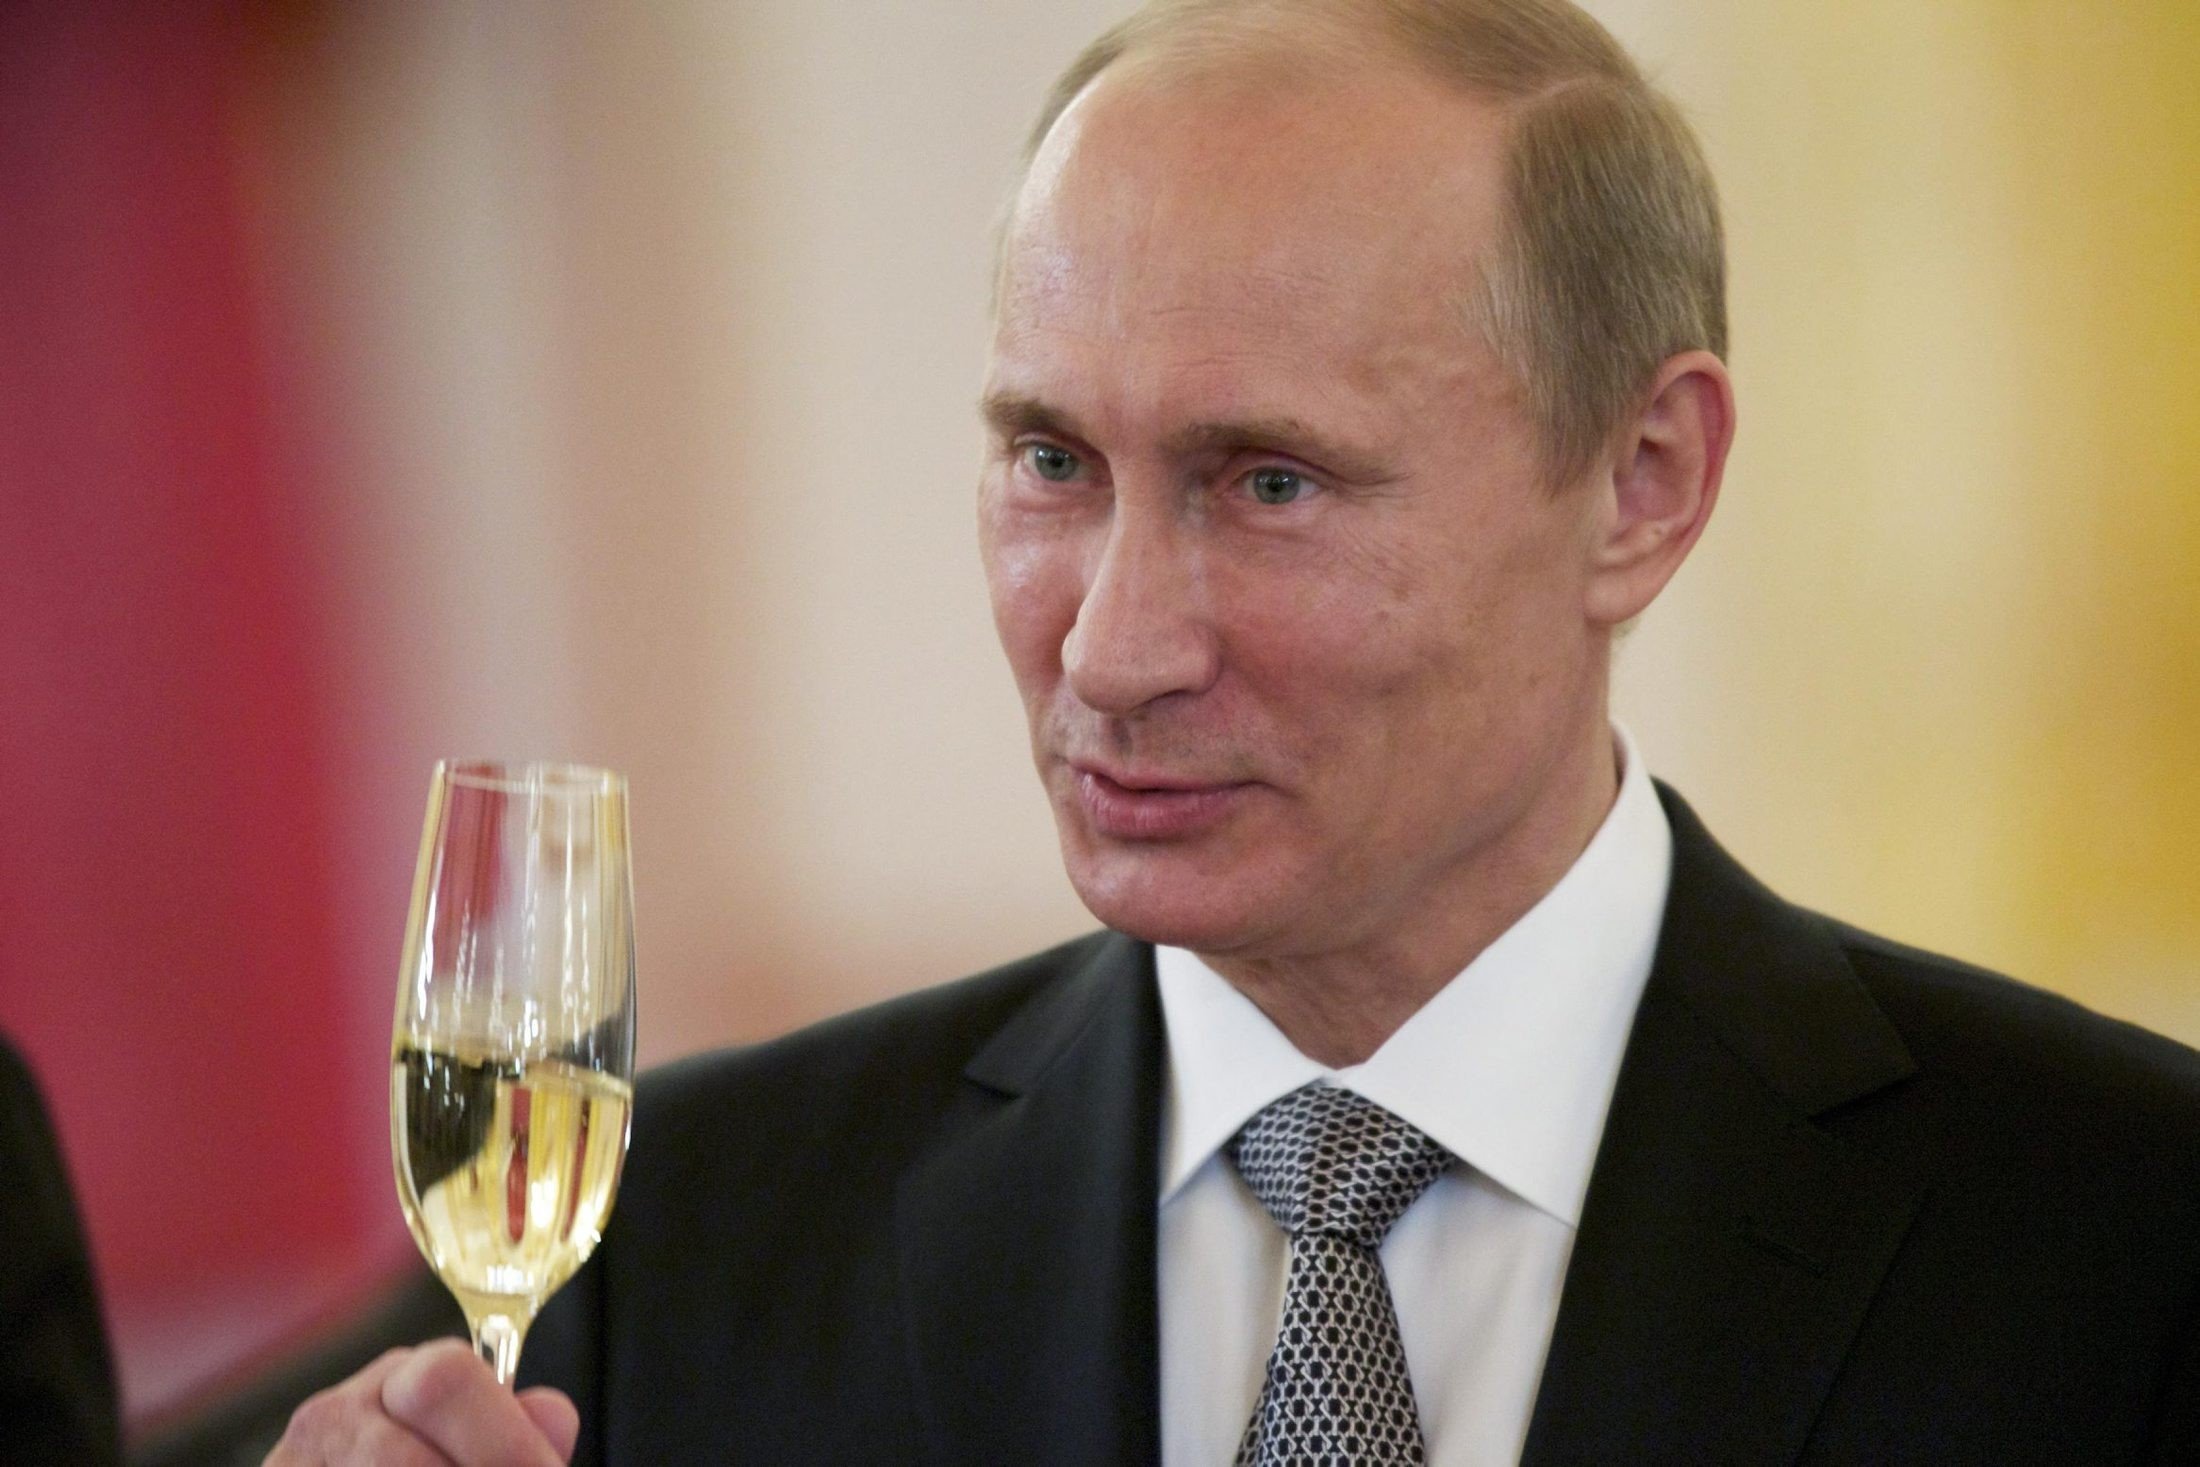 Поздравление Свете От Путина